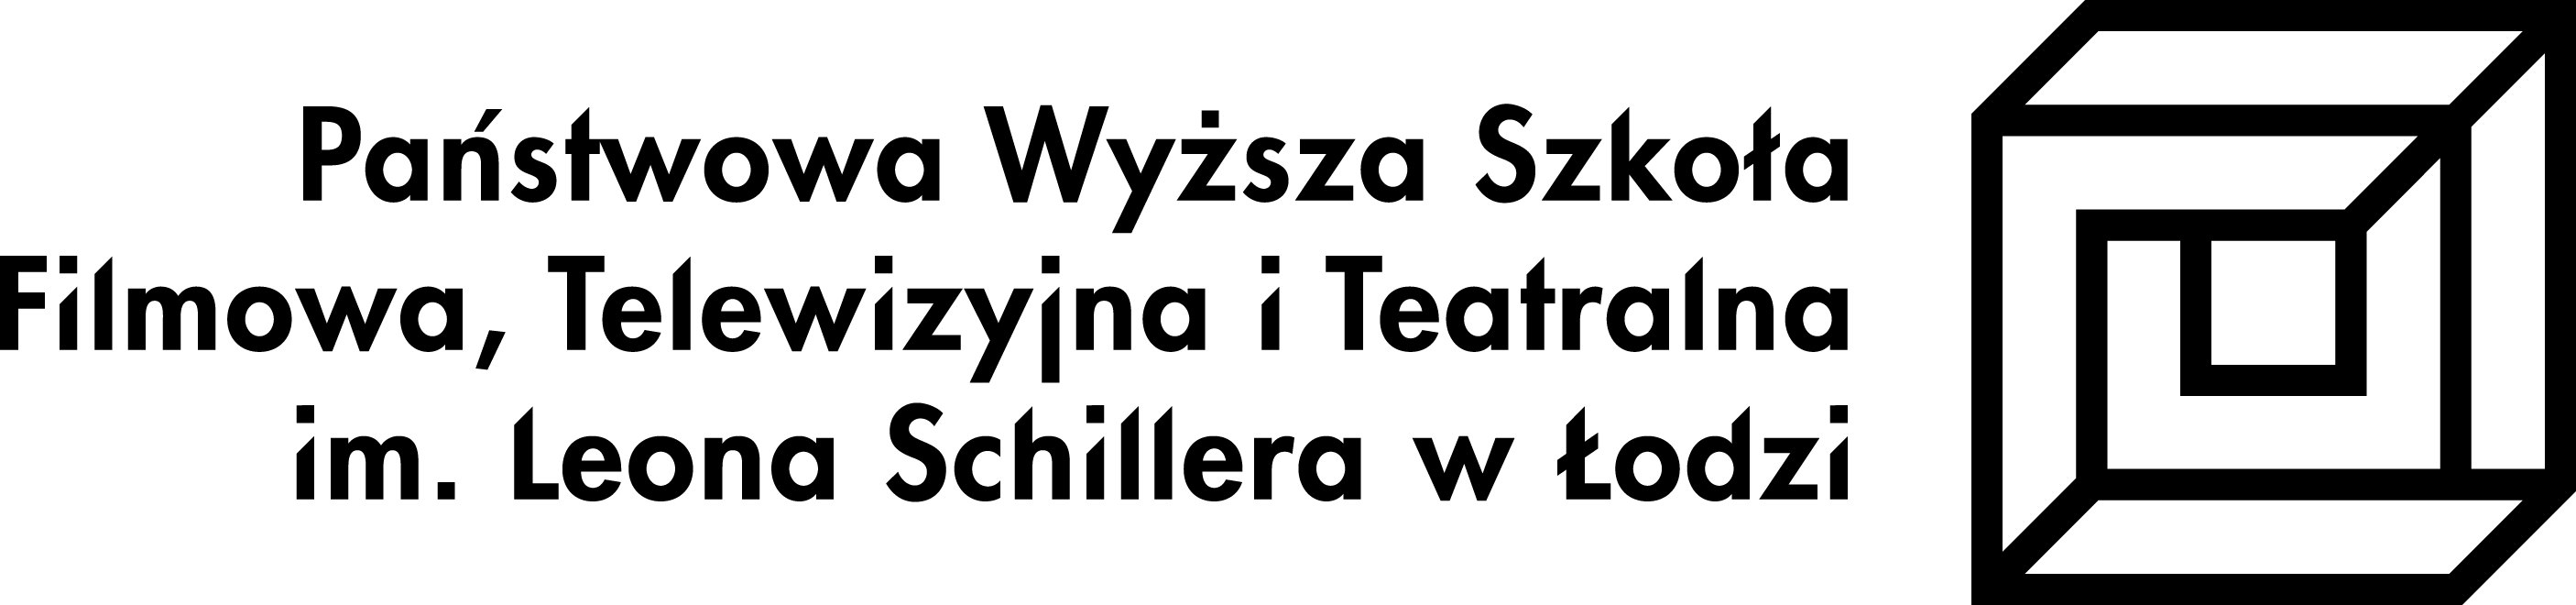 Logotyp PL wersja pelna